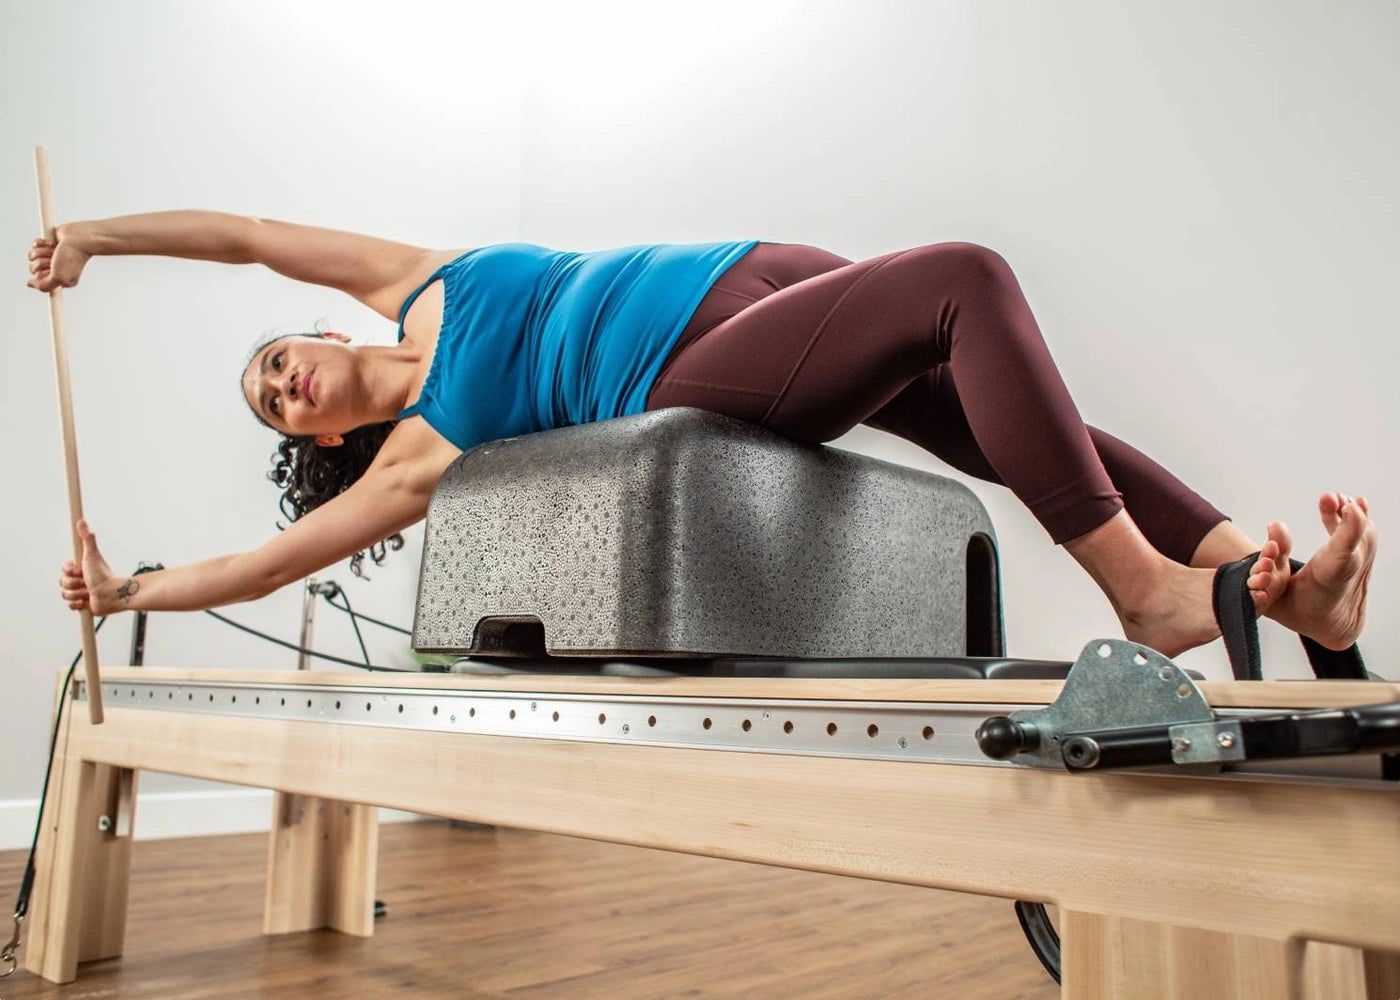 Balanced Body Rialto Pilates Reformer, Pilates Equipment for Home Workouts